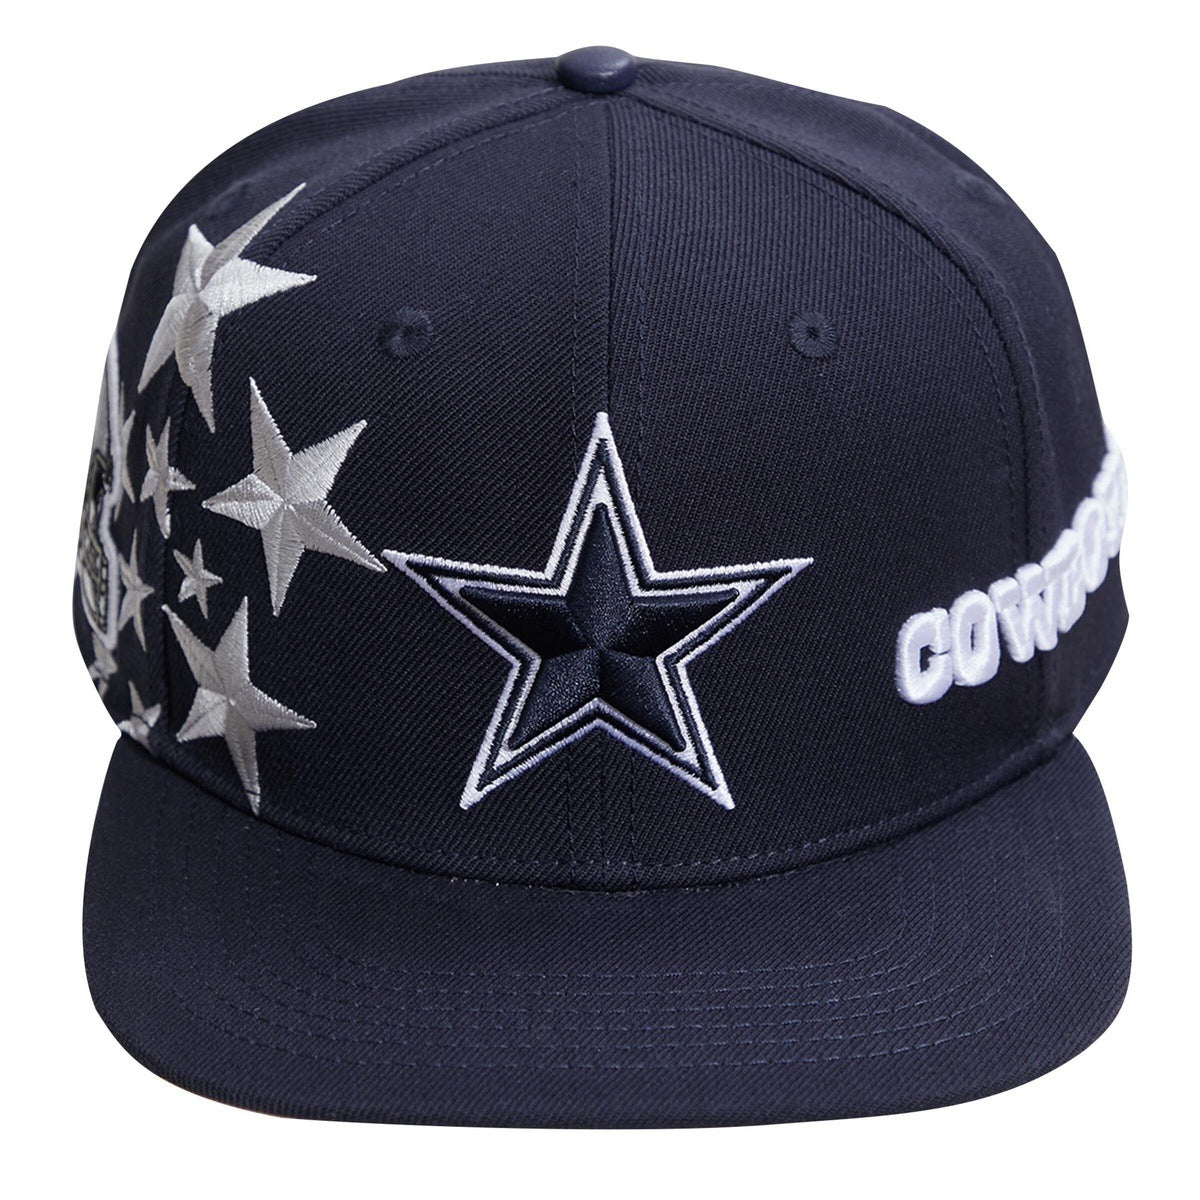 NFL DALLAS COWBOYS STARS / PINK UNDER VISOR HAT (MIDNIGHTNAVY/PINK)